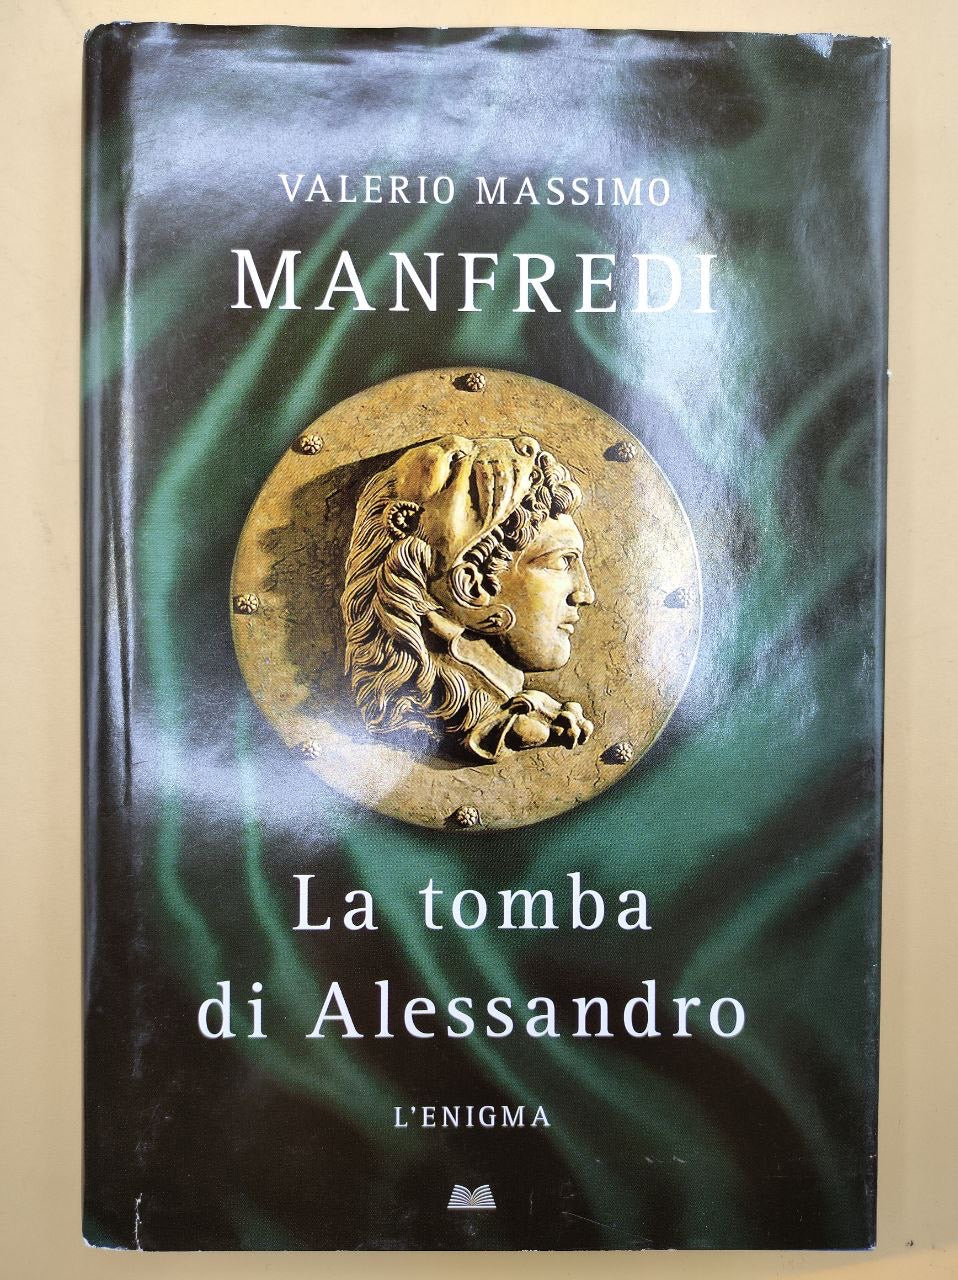 Valerio Massimo Manfredi - la tomba di Alessandro